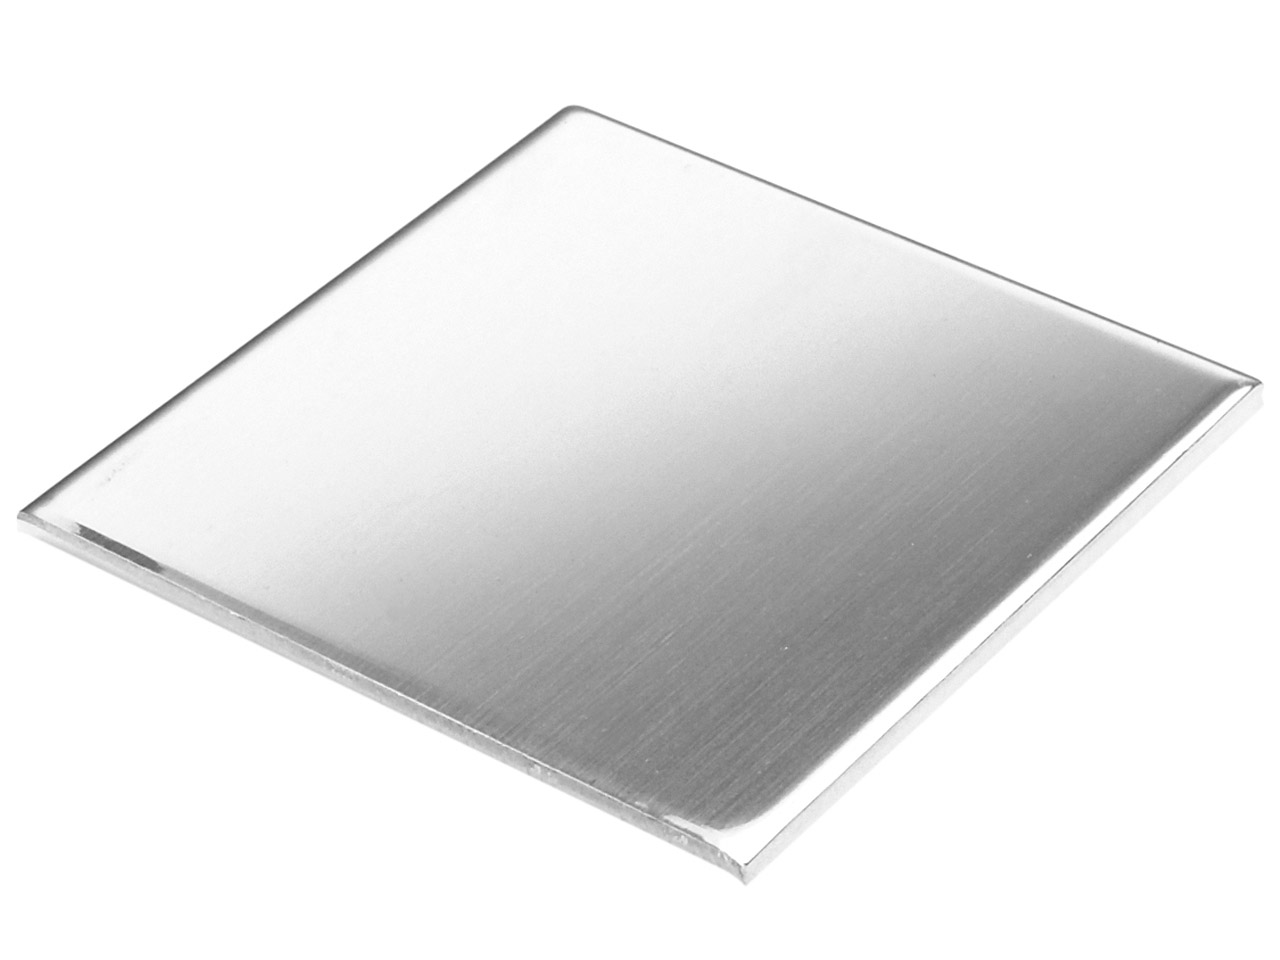 Aluminium-Blech 0,8 x 100 x 150 mm Anode/Elektrode Plattenelektrode Aluminiumplatte 10 x 15 cm 